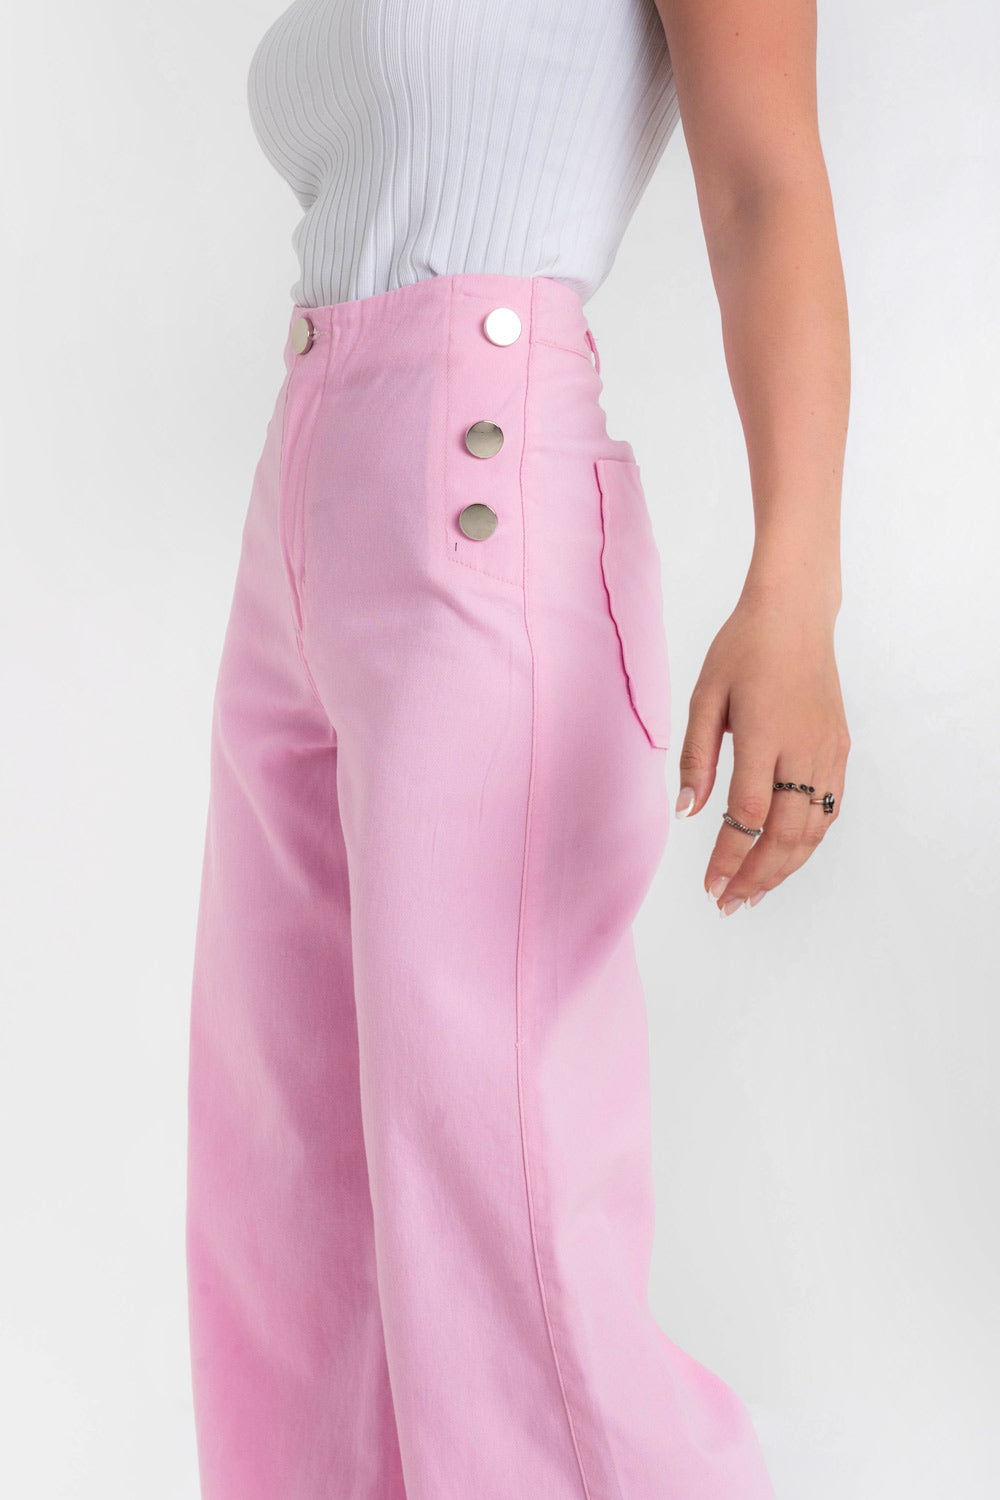 Pantalón ajustado de fit culotte, cintura alta, botones marineros decorativos en contraste y bolsillos posteriores de parche. Cierre frontal con botón en contraste y cremallera oculta.